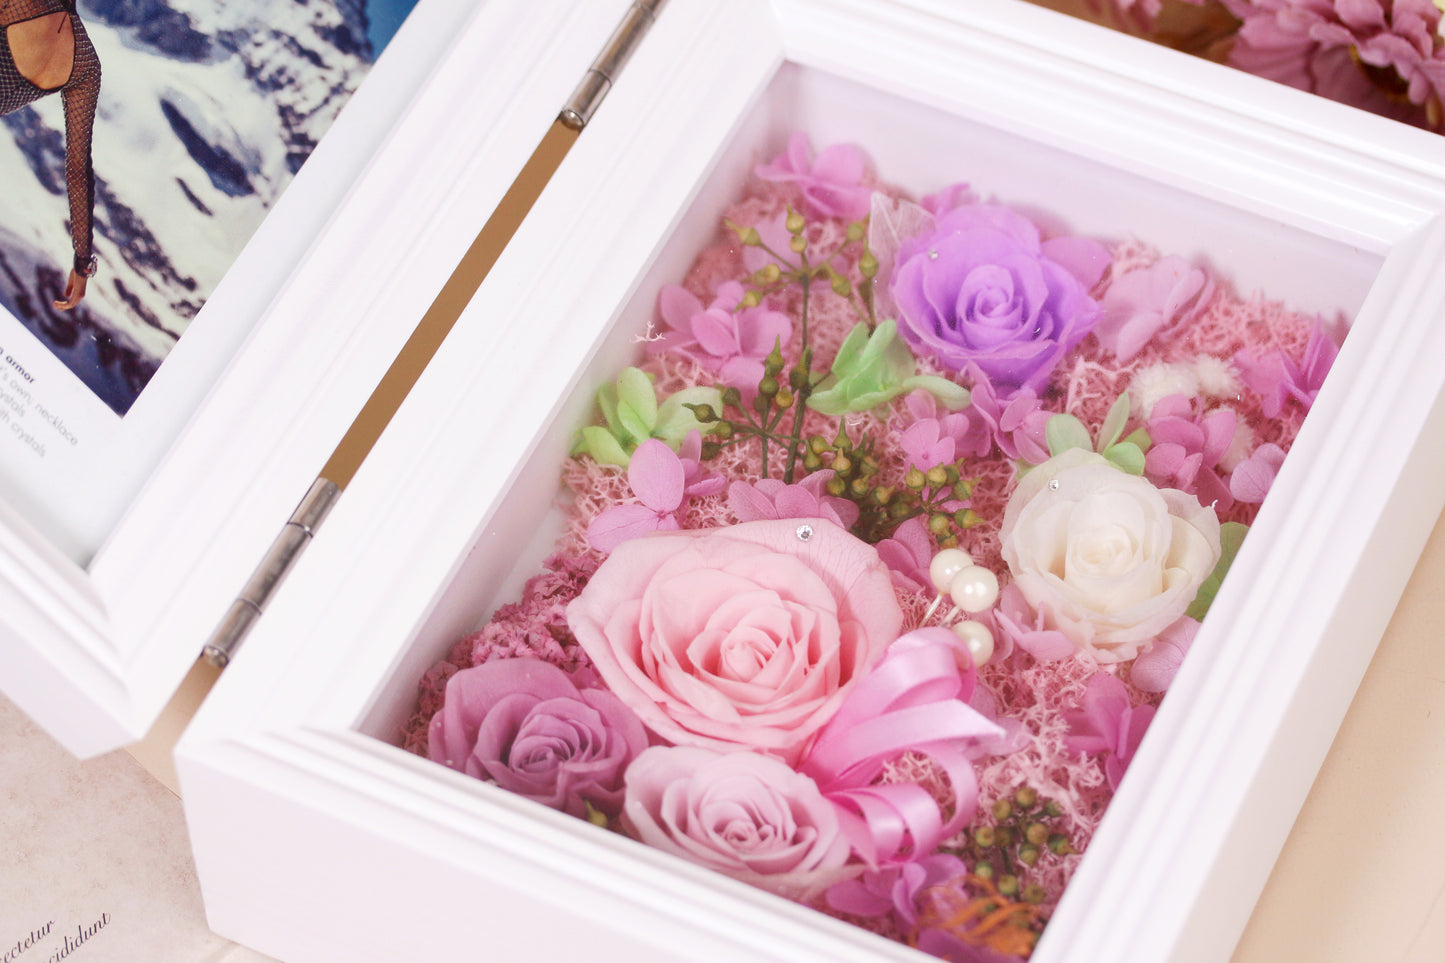 Her Rose - Memory Box